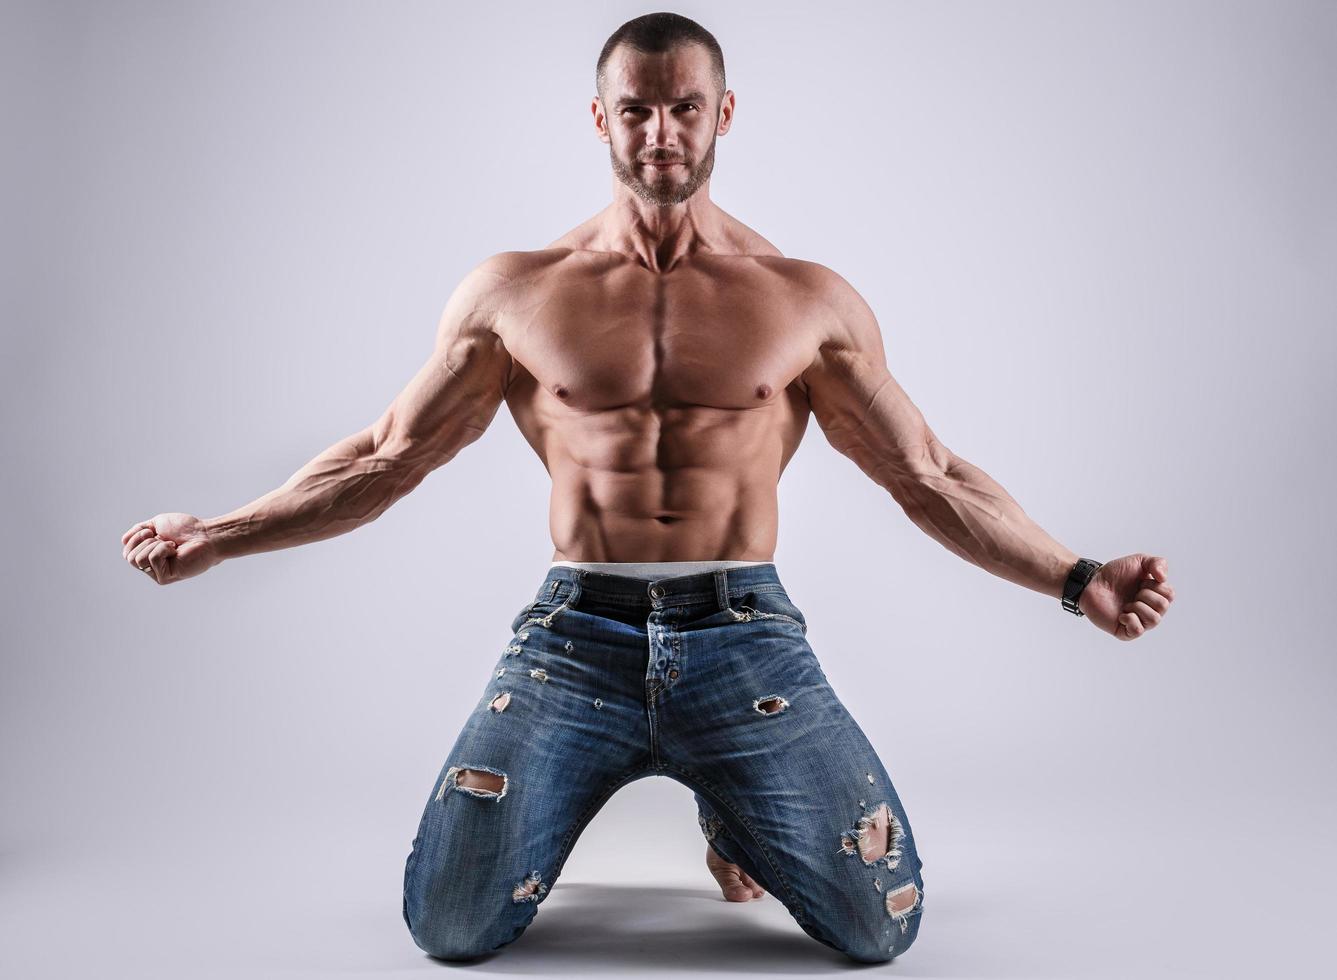 Schöner muskulöser Mann in Jeans, der im Studio posiert foto